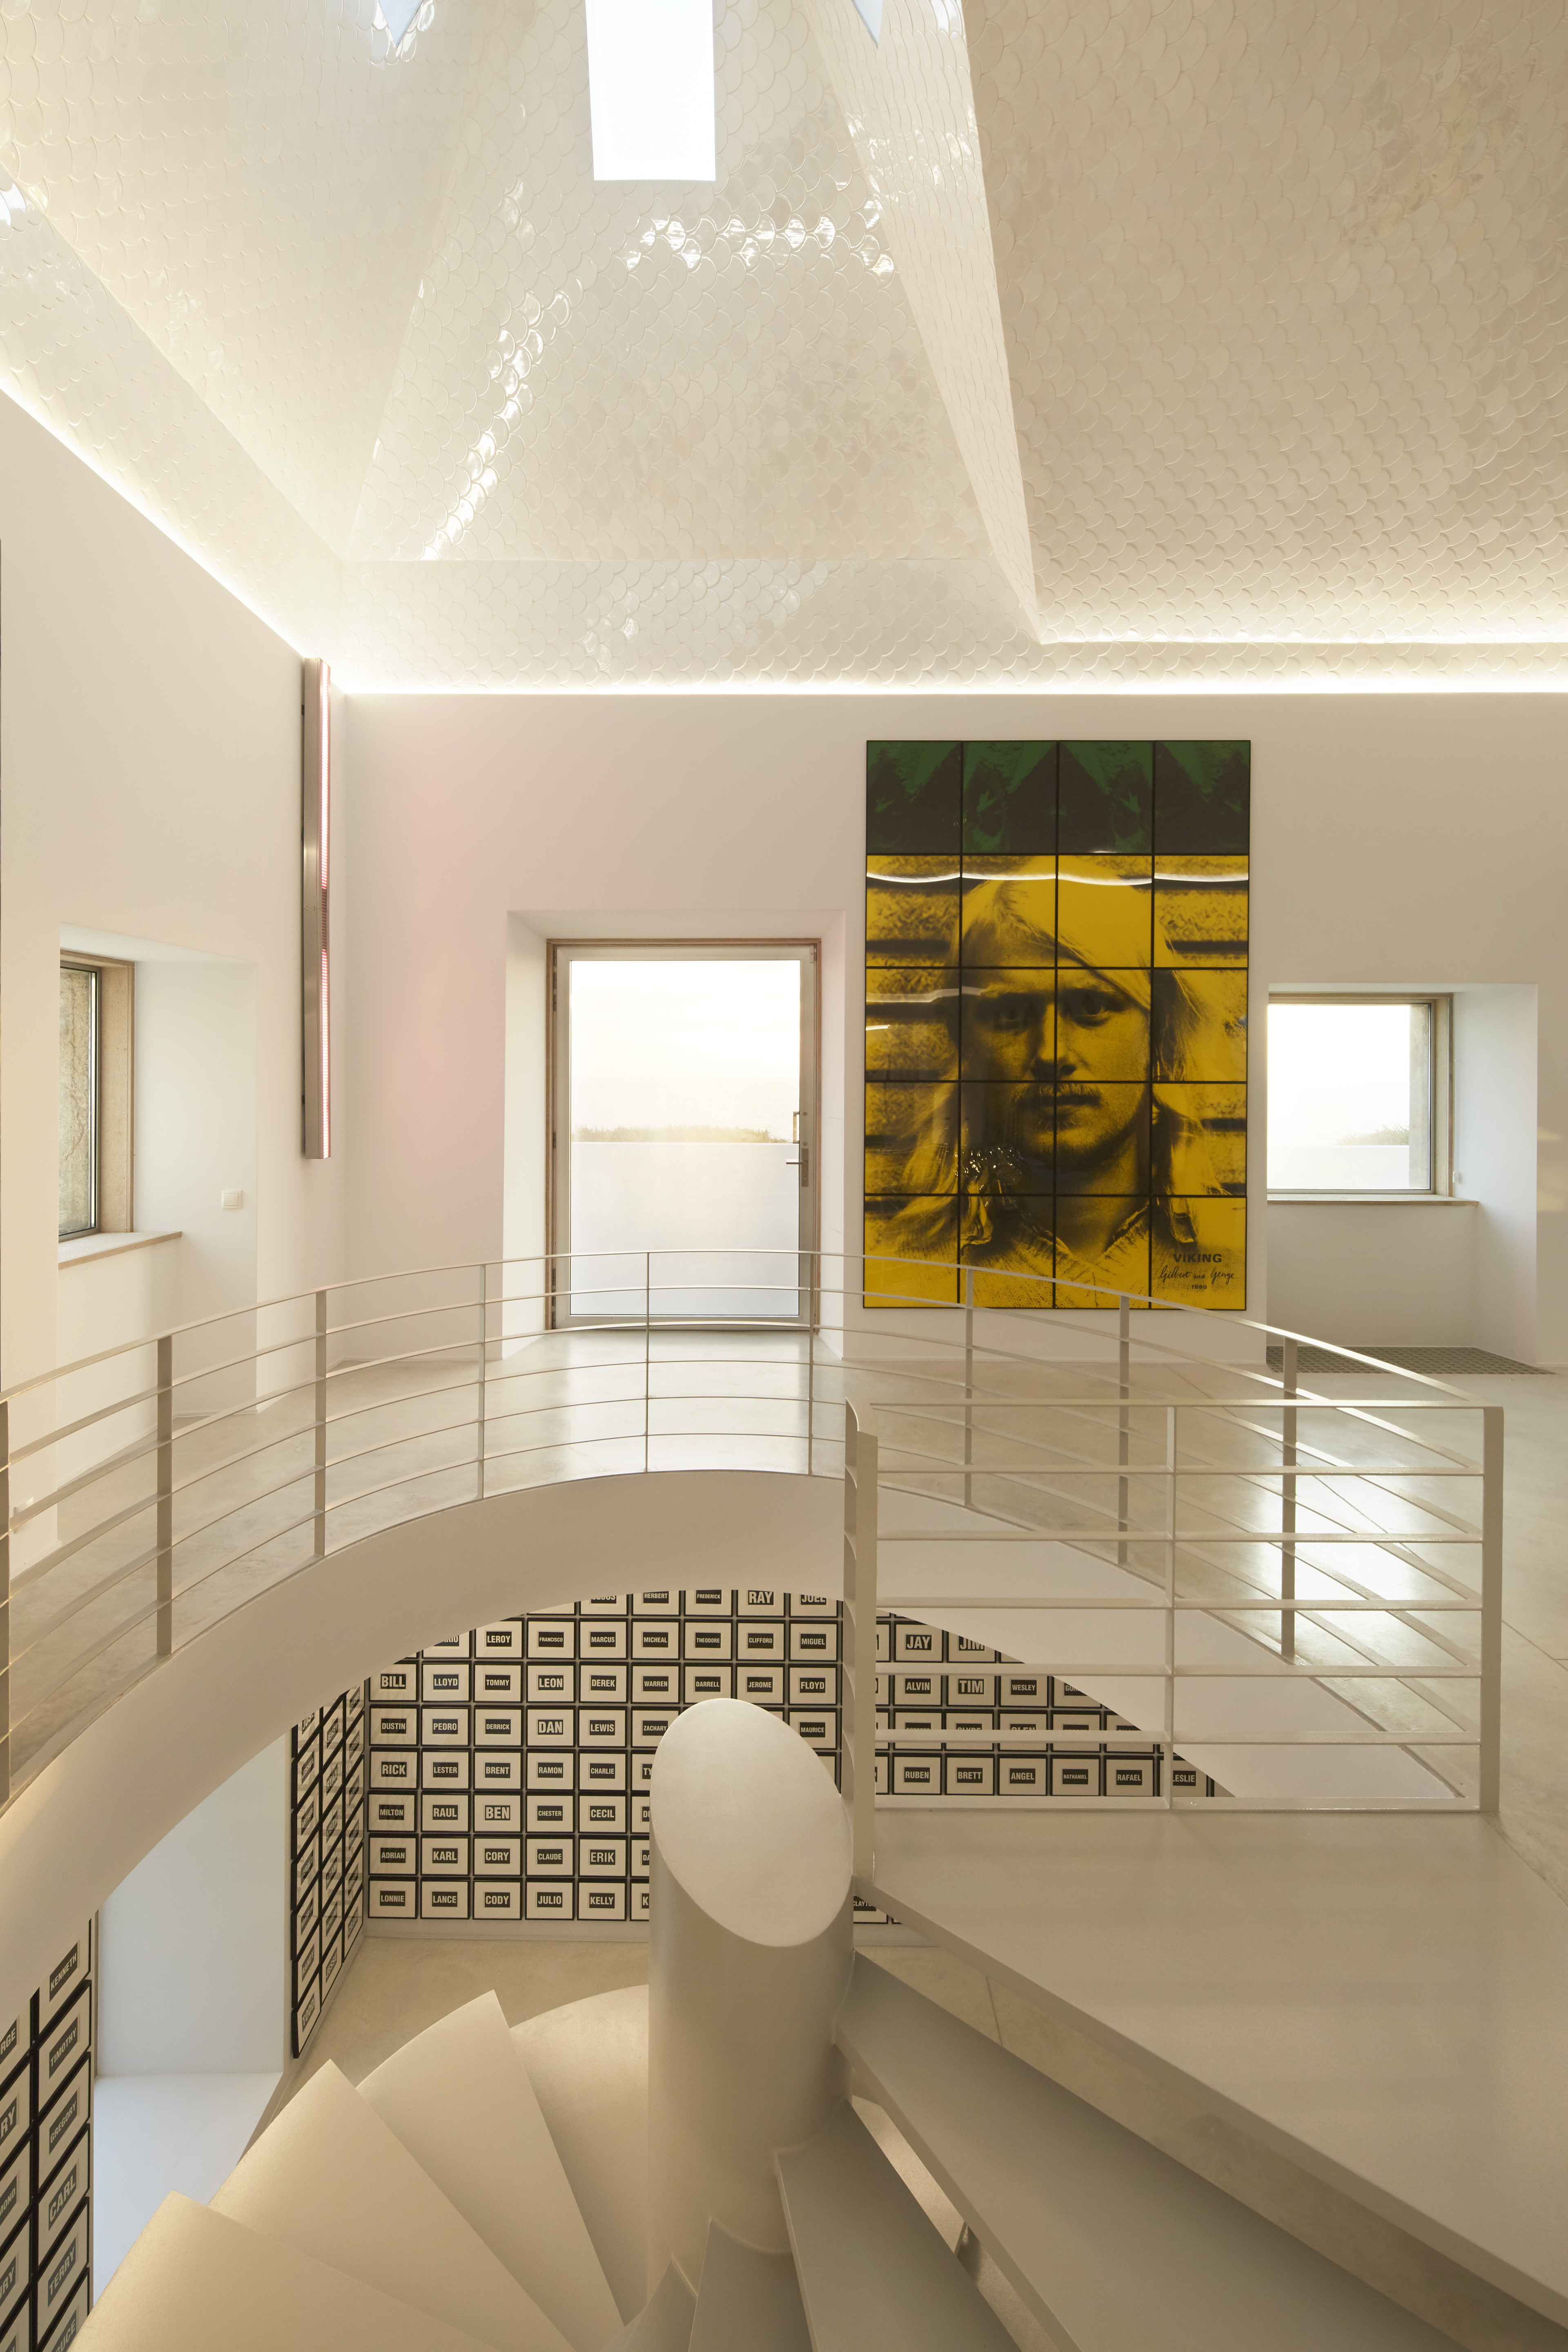 H3A3772 r La casa perfecta para un coleccionista en Portugal fue intervenida por un arquitecto colombiano